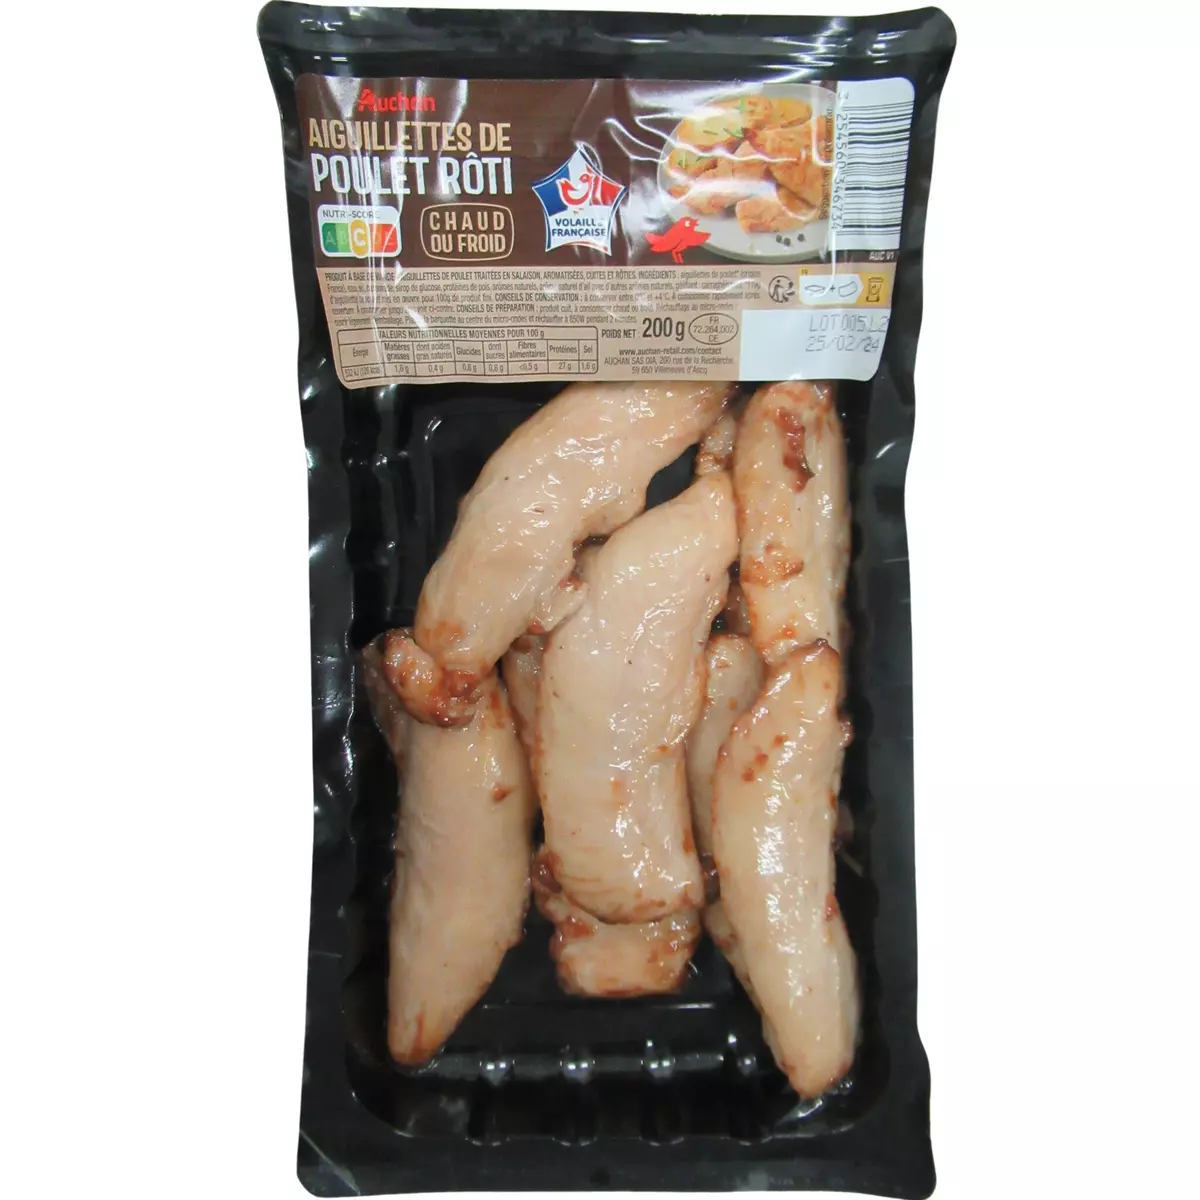 AUCHAN Aiguillettes de poulet rôti 200g